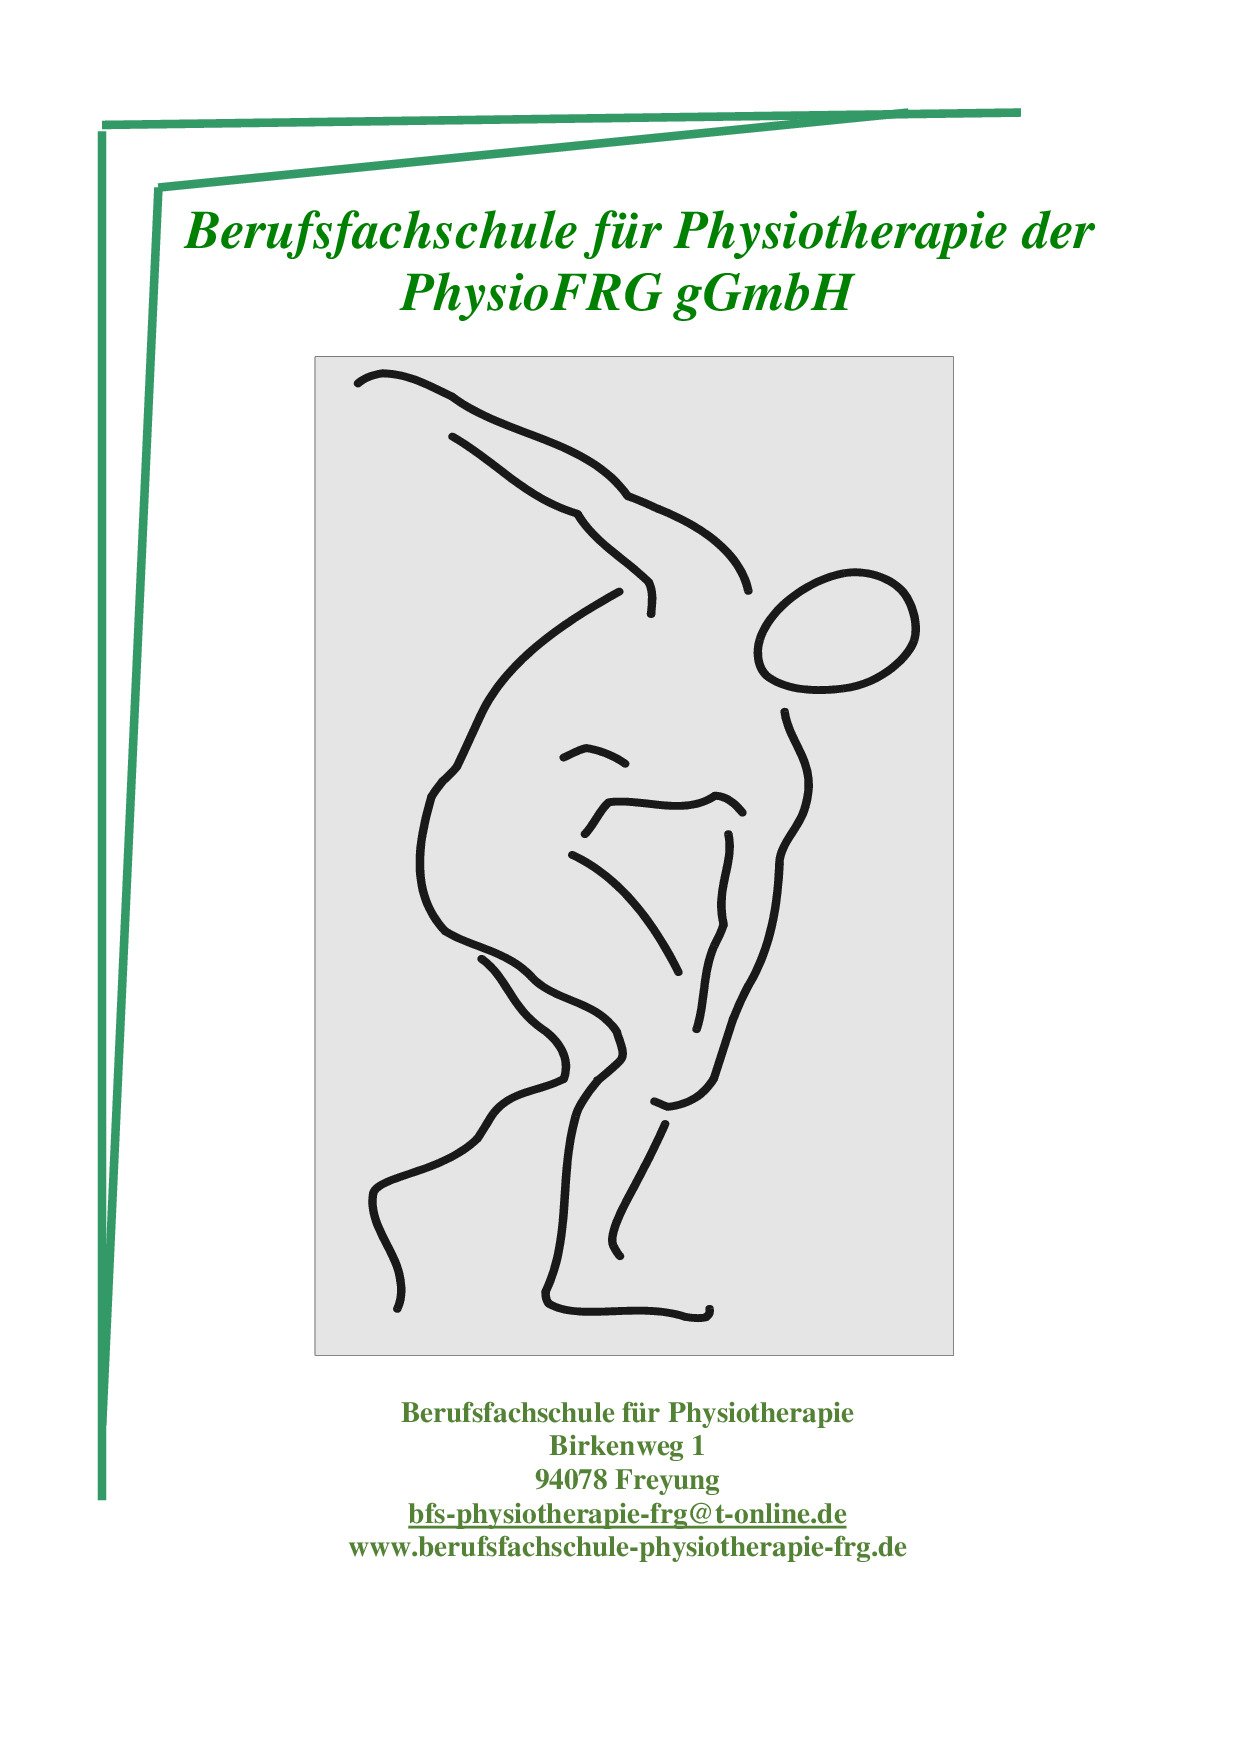 Staatlich anerkannte Berufsfachschule für Physiotherapie Freyung der PhysioFRG gGmbH - Logo